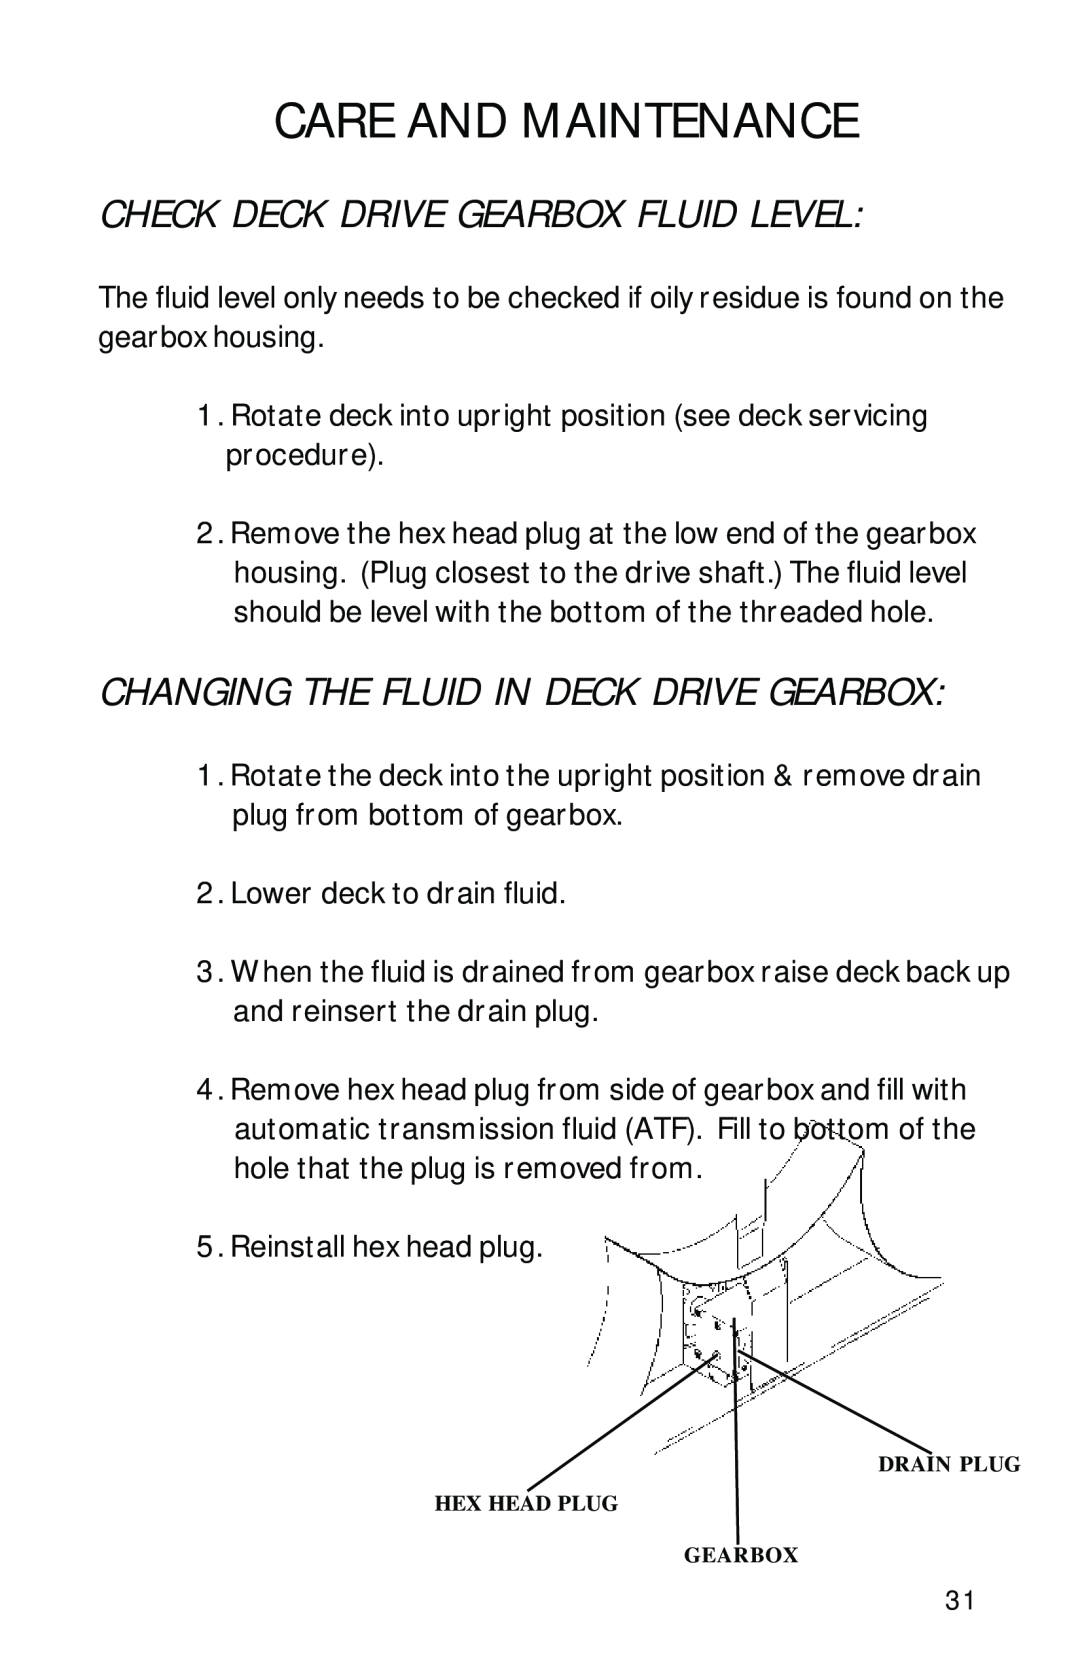 Dixon 13090-0601 Check Deck Drive Gearbox Fluid Level, Changing The Fluid In Deck Drive Gearbox, Care And Maintenance 